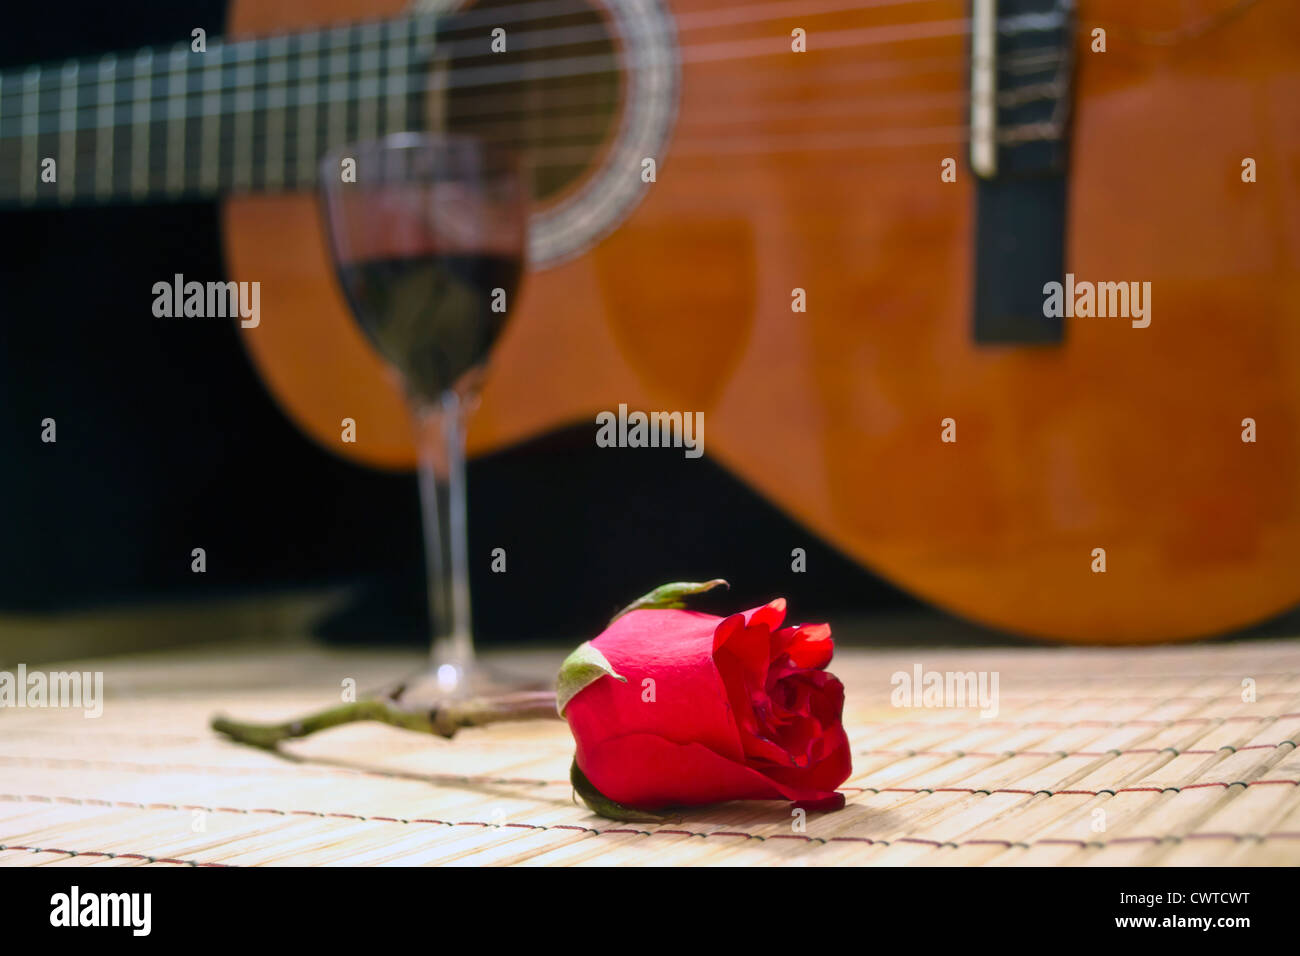 Imagen bohemia de guitarra española,noche romántica copa de viña rose y la  guitarra clásica,tema de amor,tema bohemia Fotografía de stock - Alamy